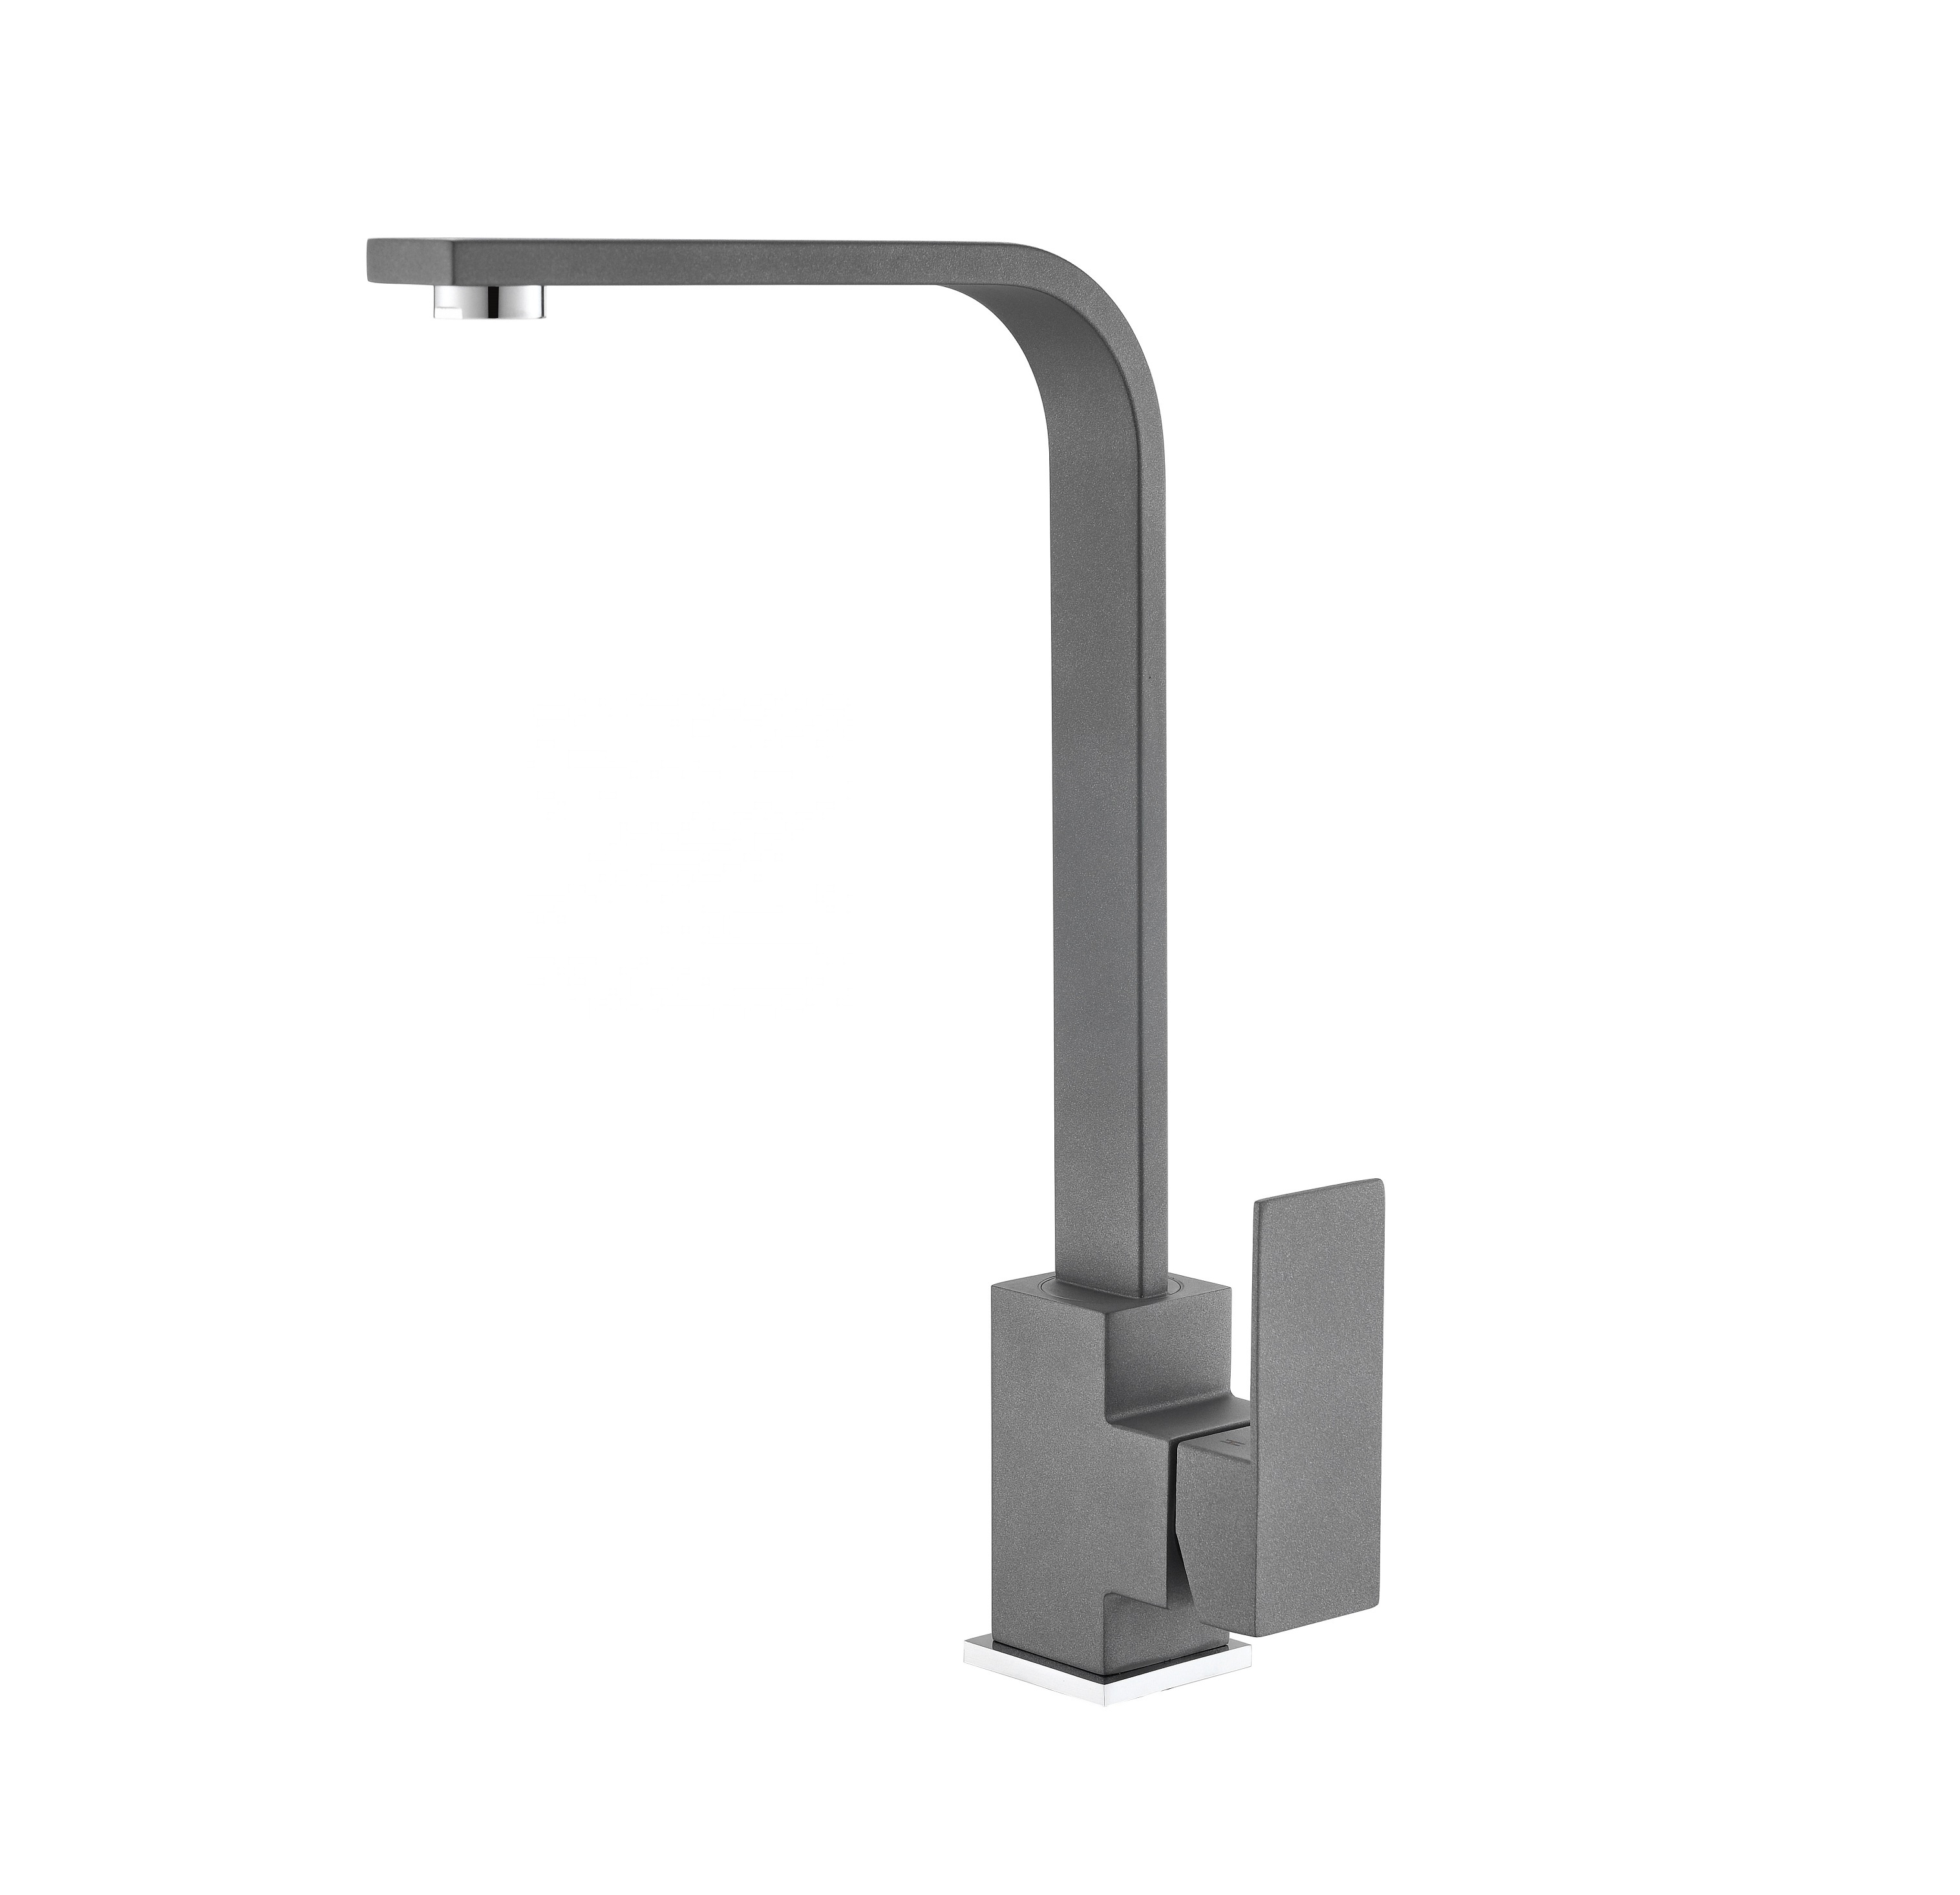 Le robinet carré noir mat nouveau design moderne robinet de cuisine à pulvérisation extractible